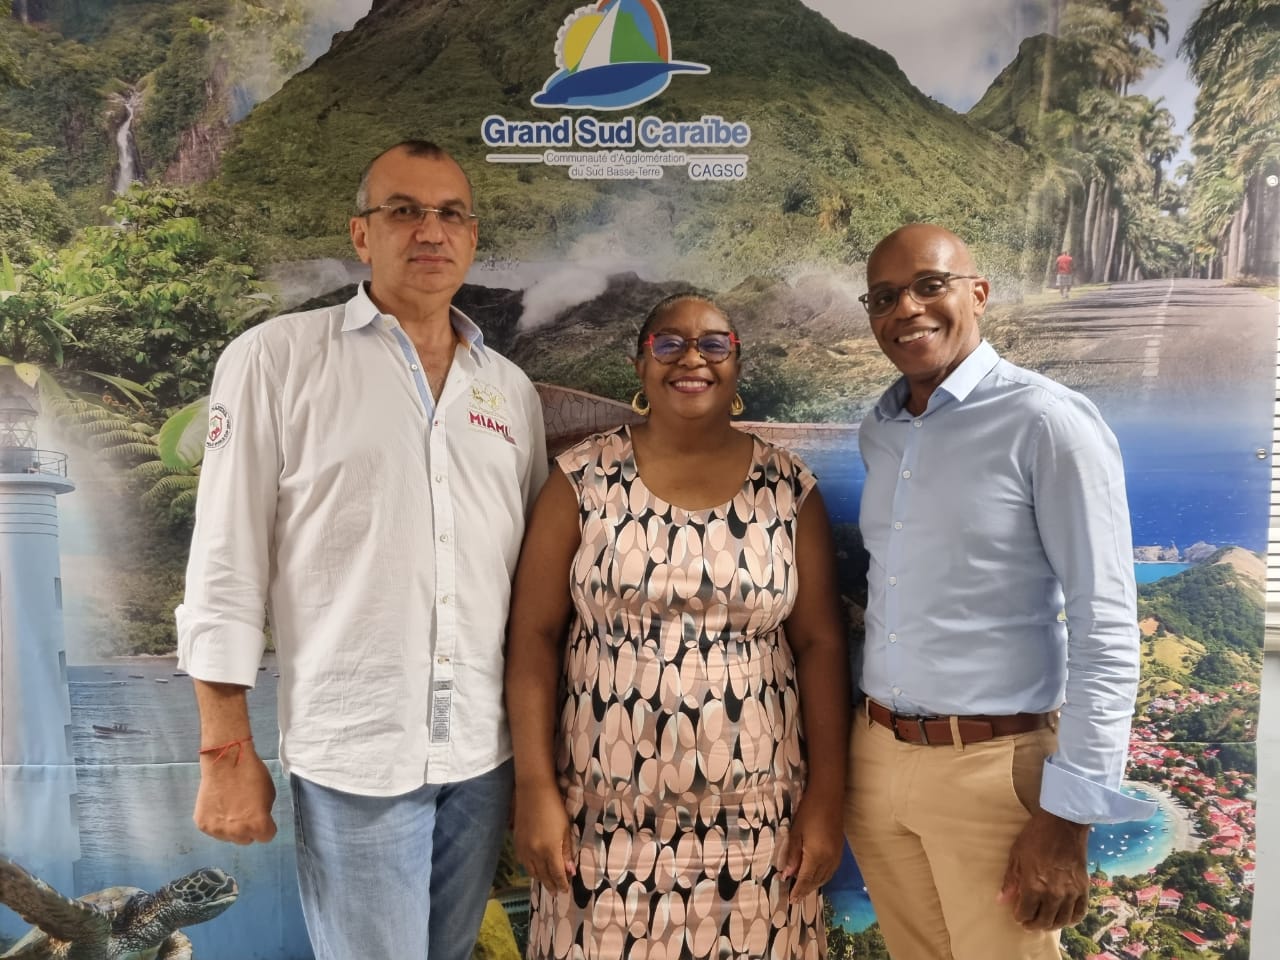     Patricia Baillet est la nouvelle présidente de l’office de tourisme du Grand Sud Caraïbes

